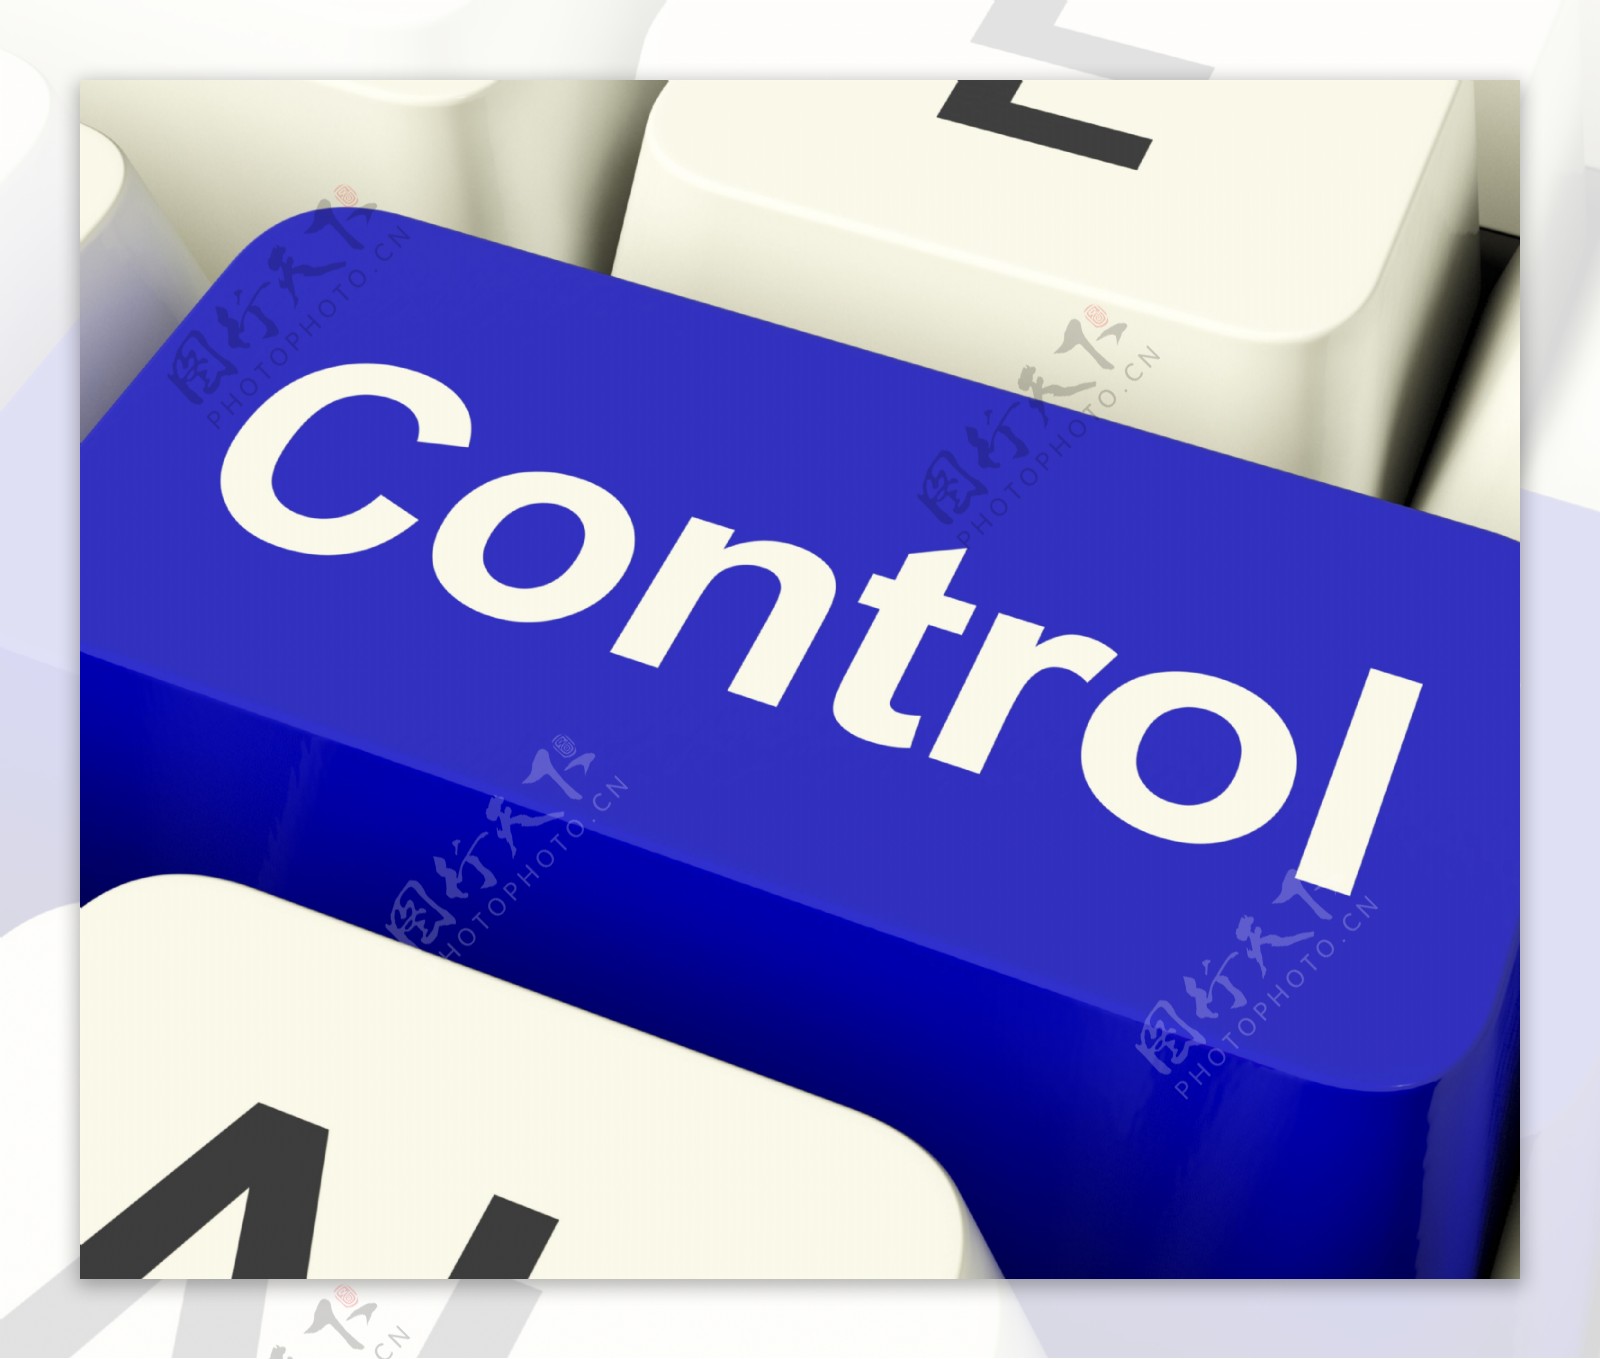 控制电脑钥匙显示远程控制器或接口